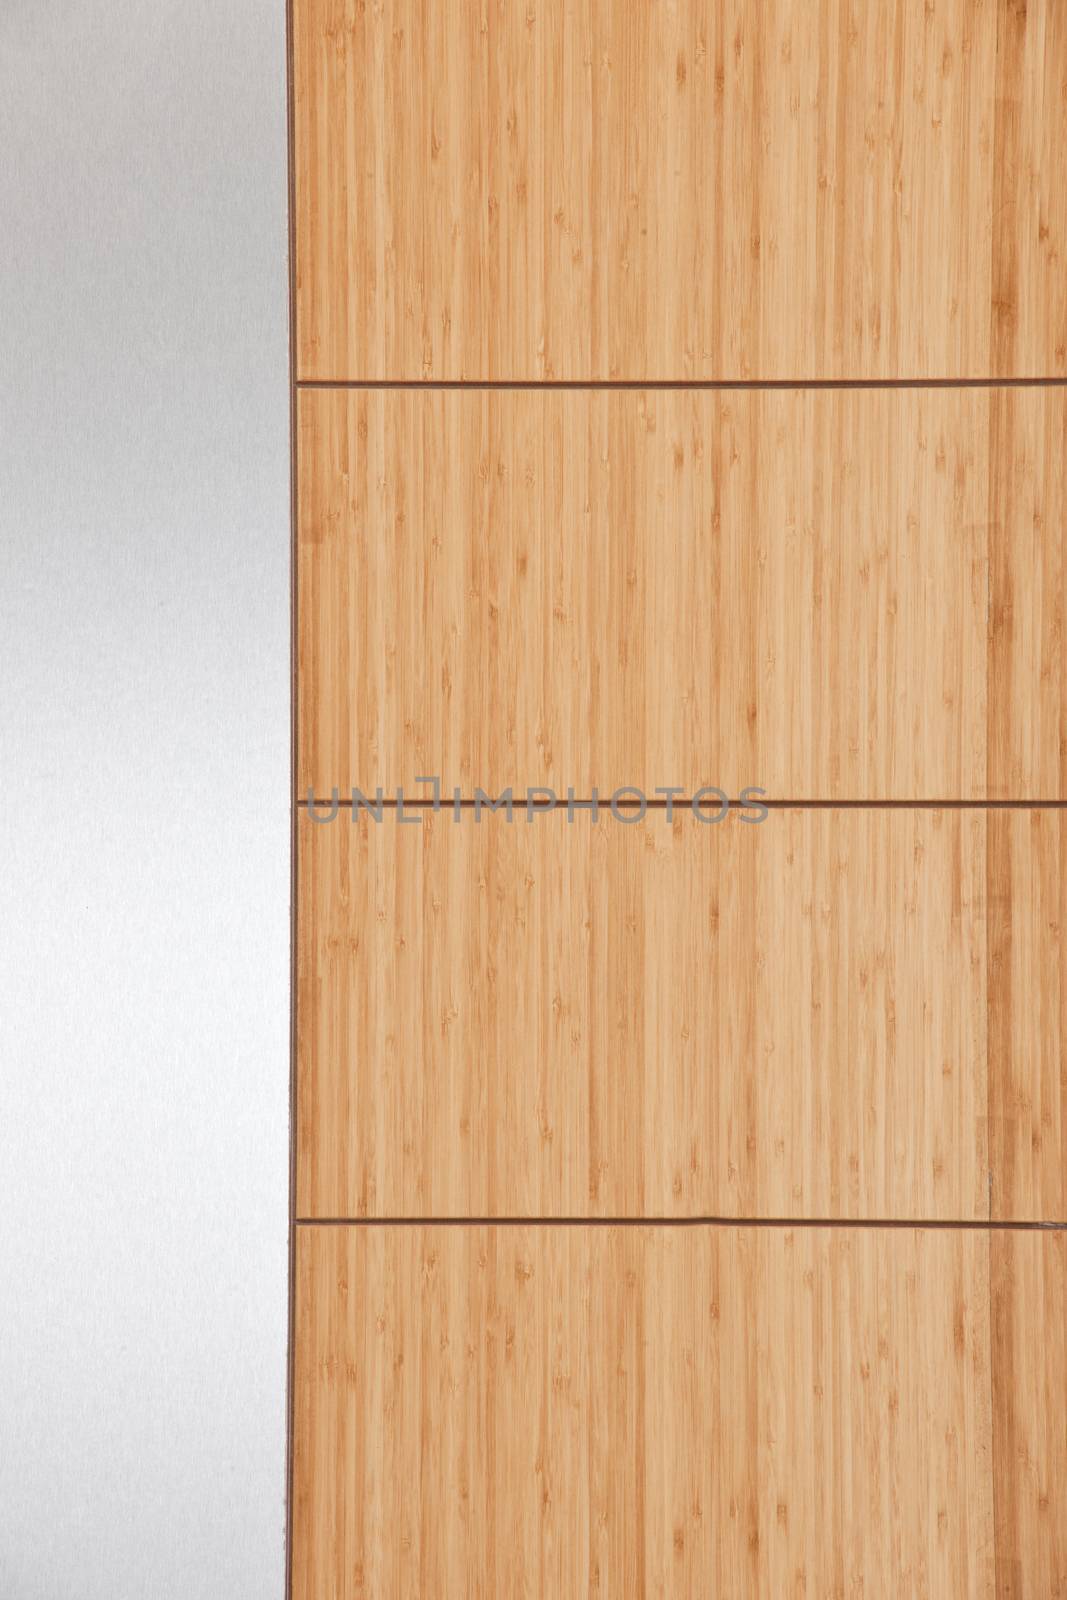 hardwood floor detail 